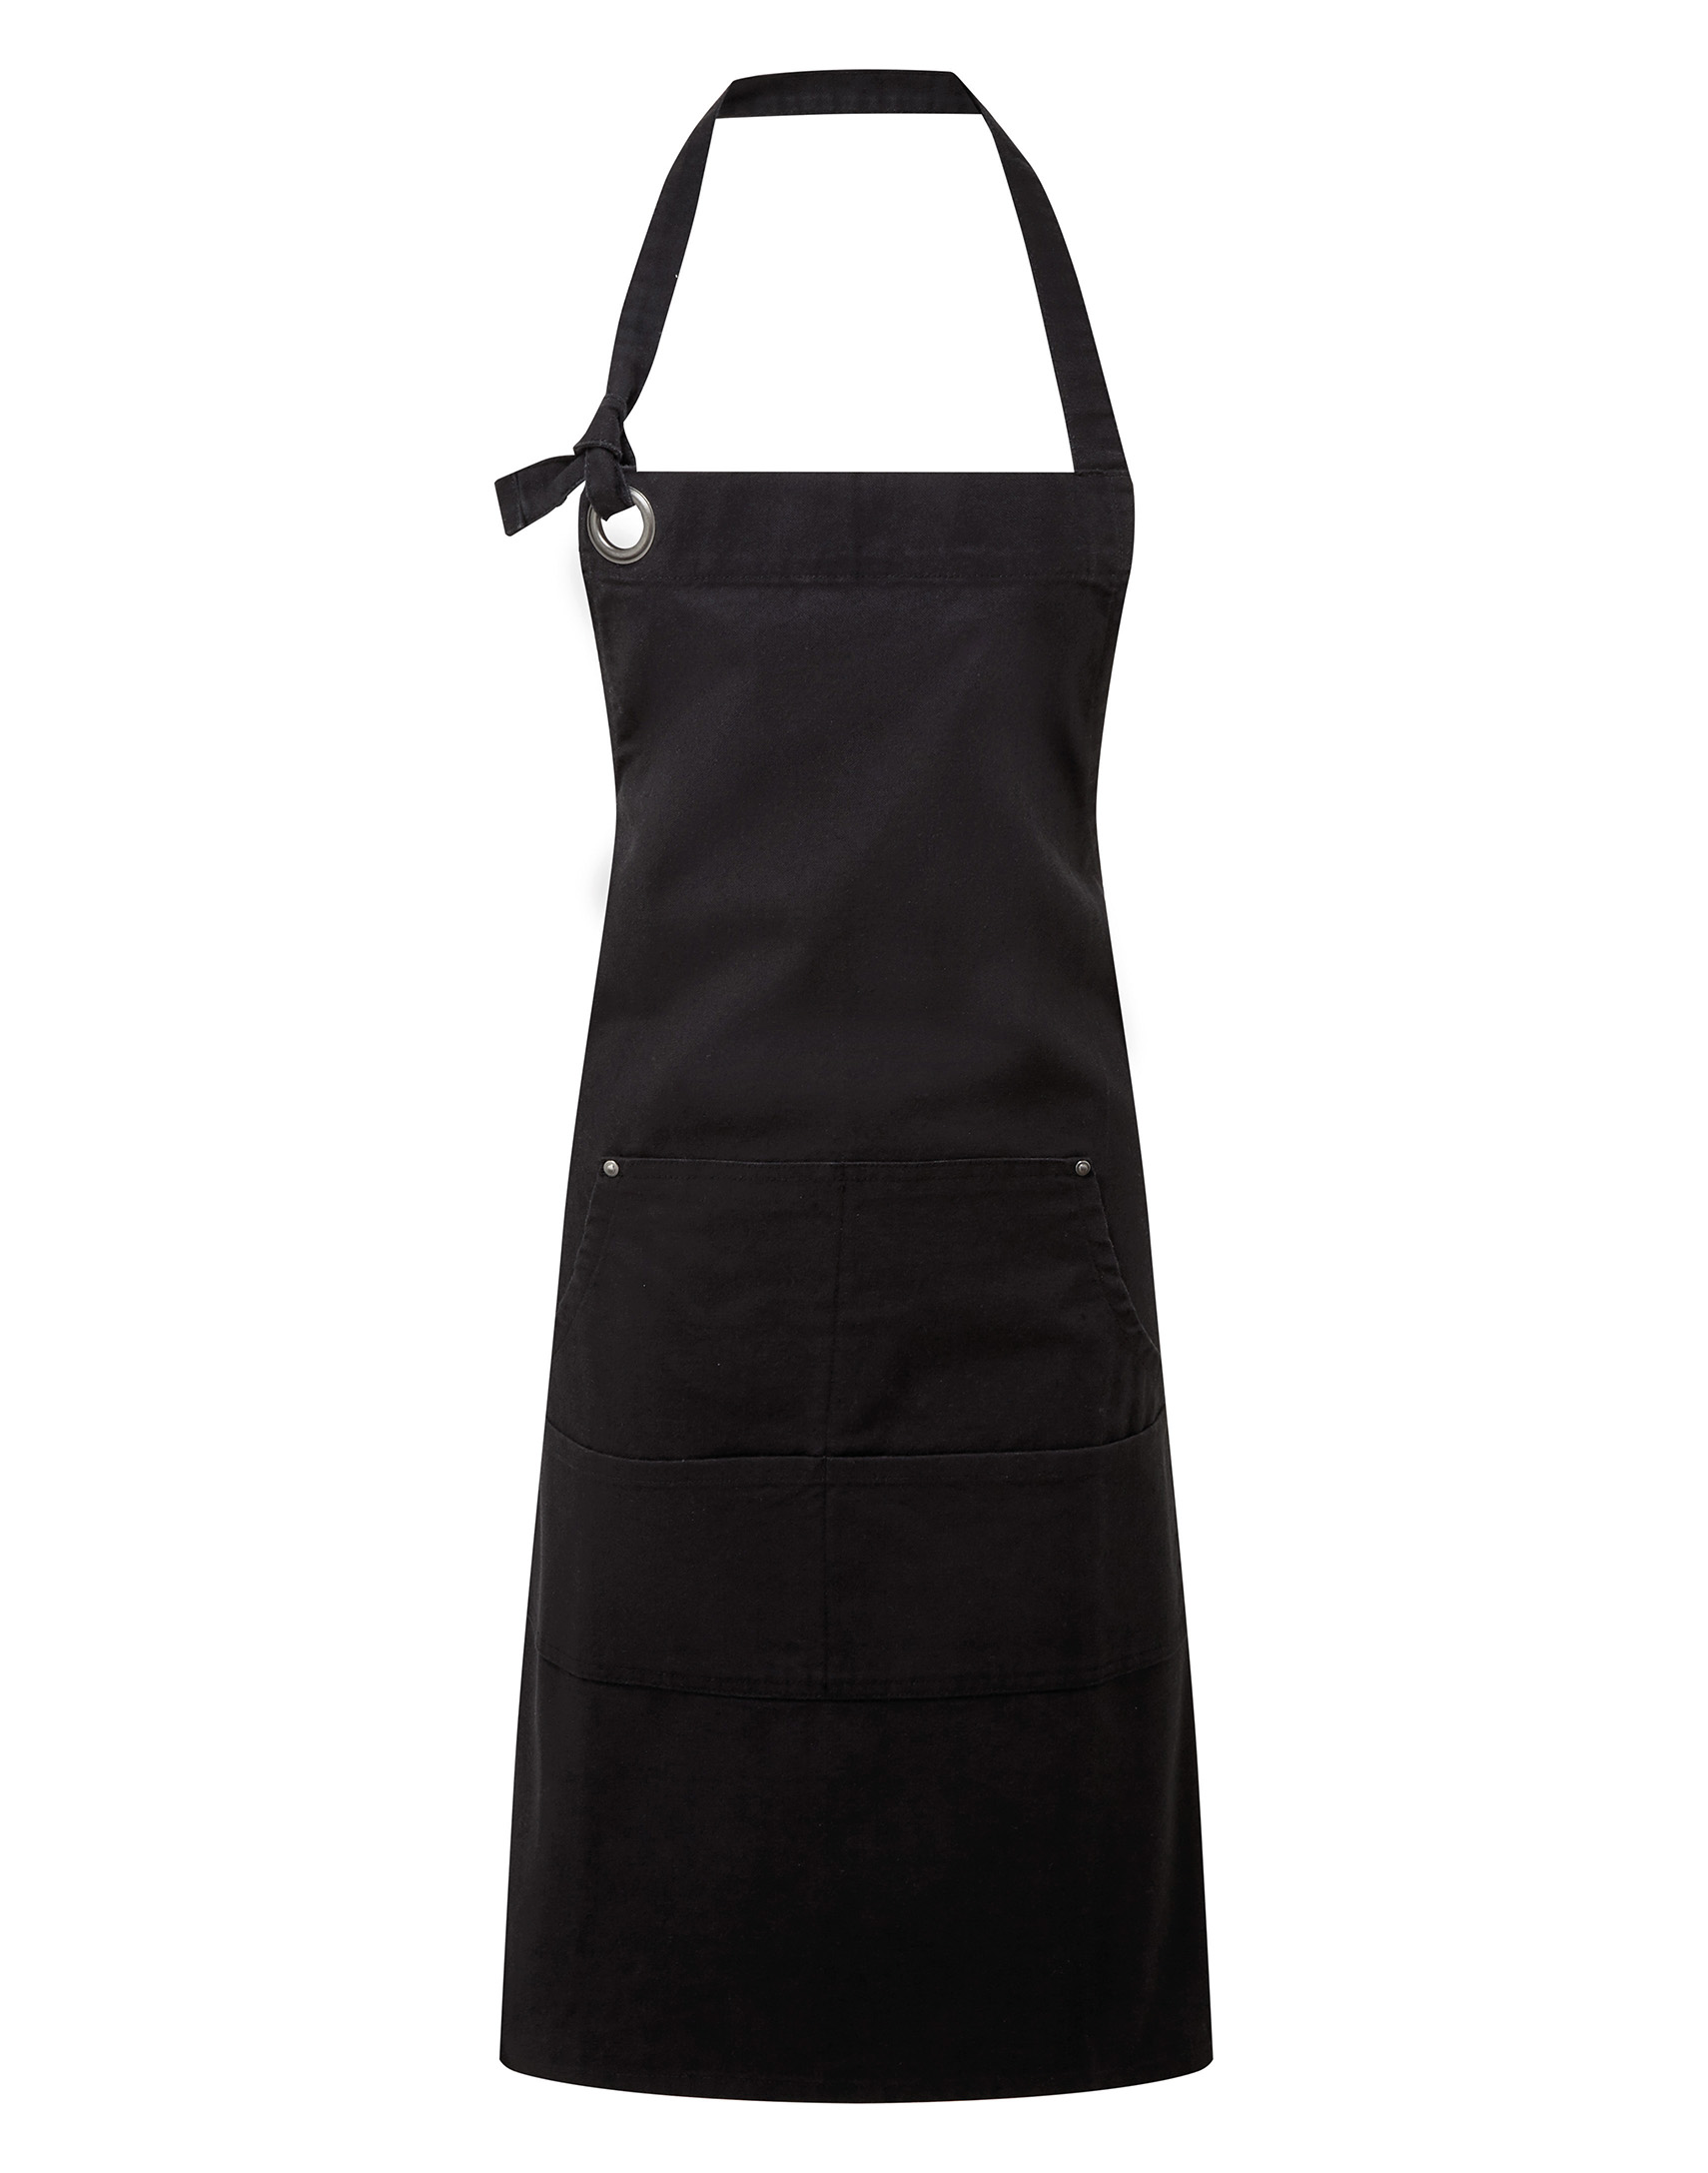 Calibre cotton canvas pocket apron 72 x 86 cm Premier® Black